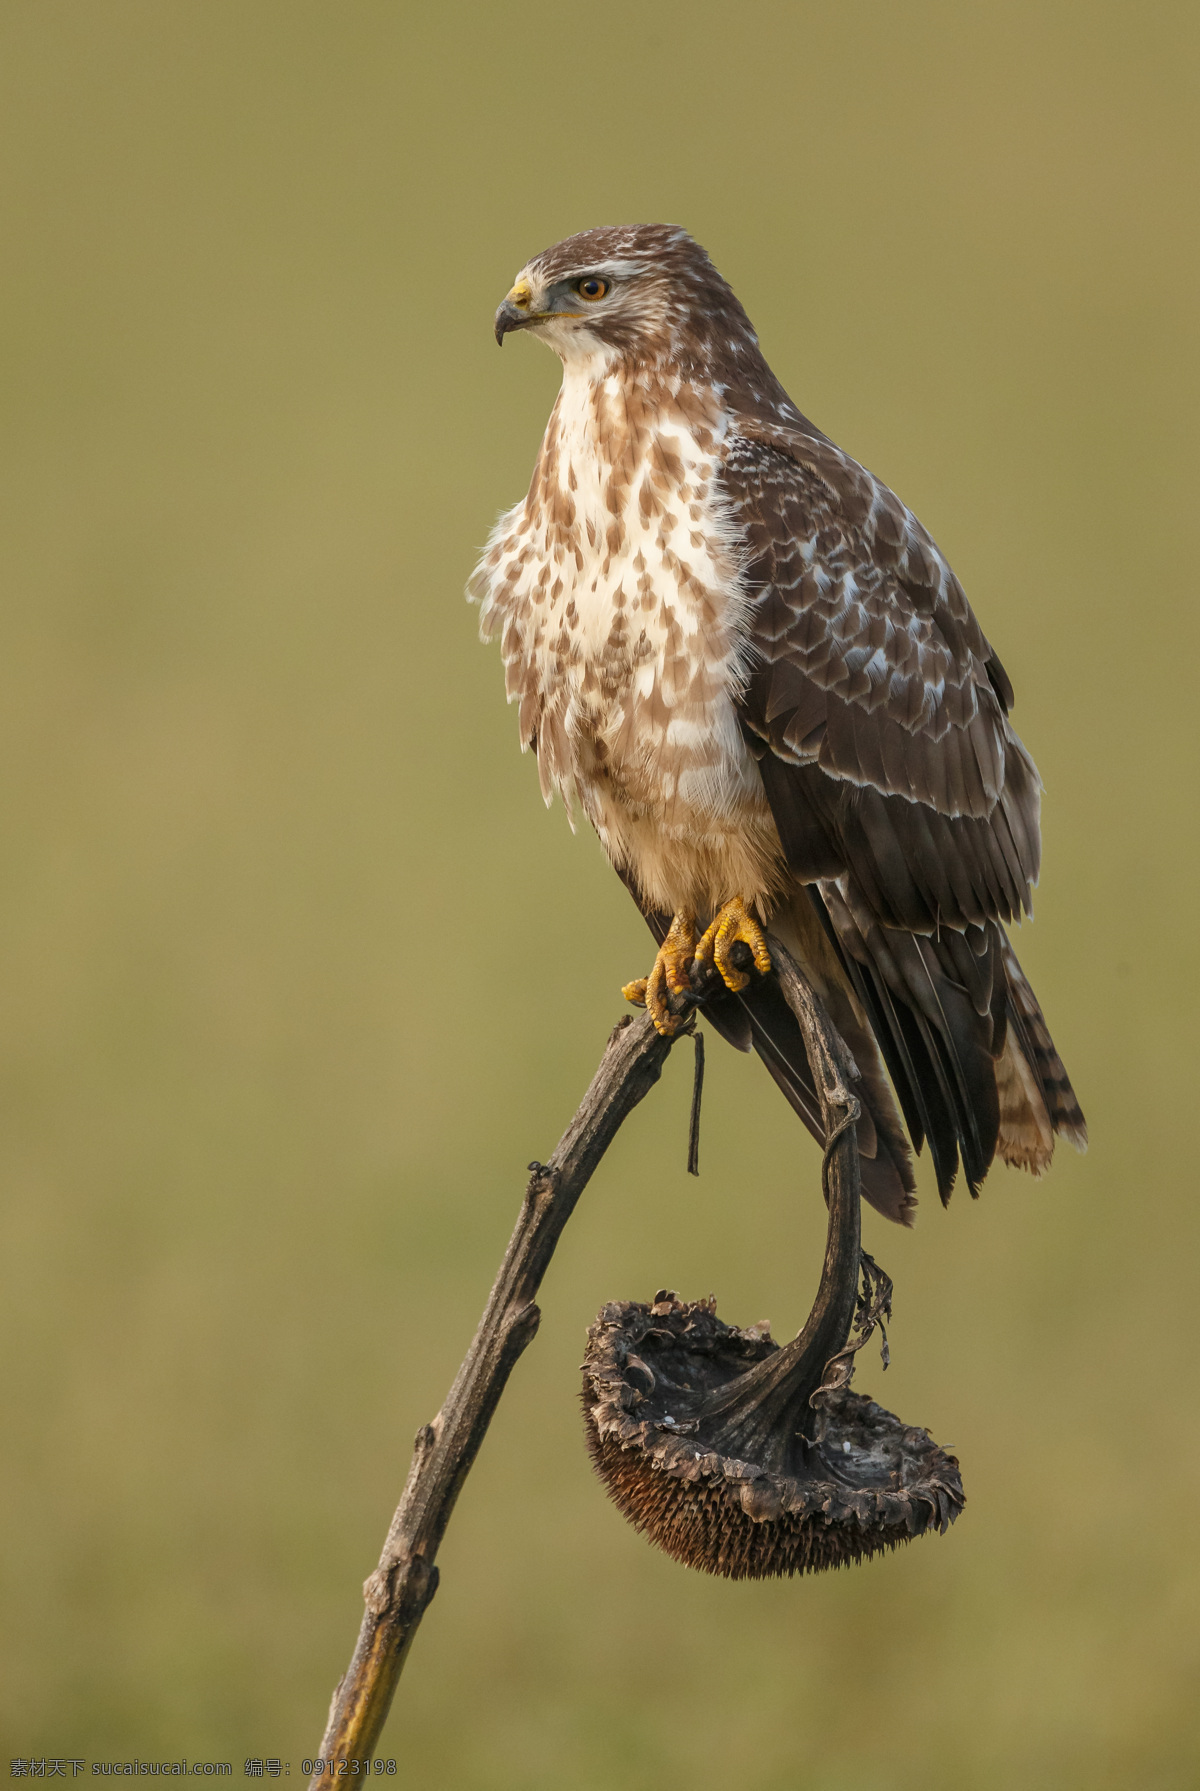 只 猎鹰 摄影图片 一只 飞禽 休息中的鹰 生物世界 鸟类